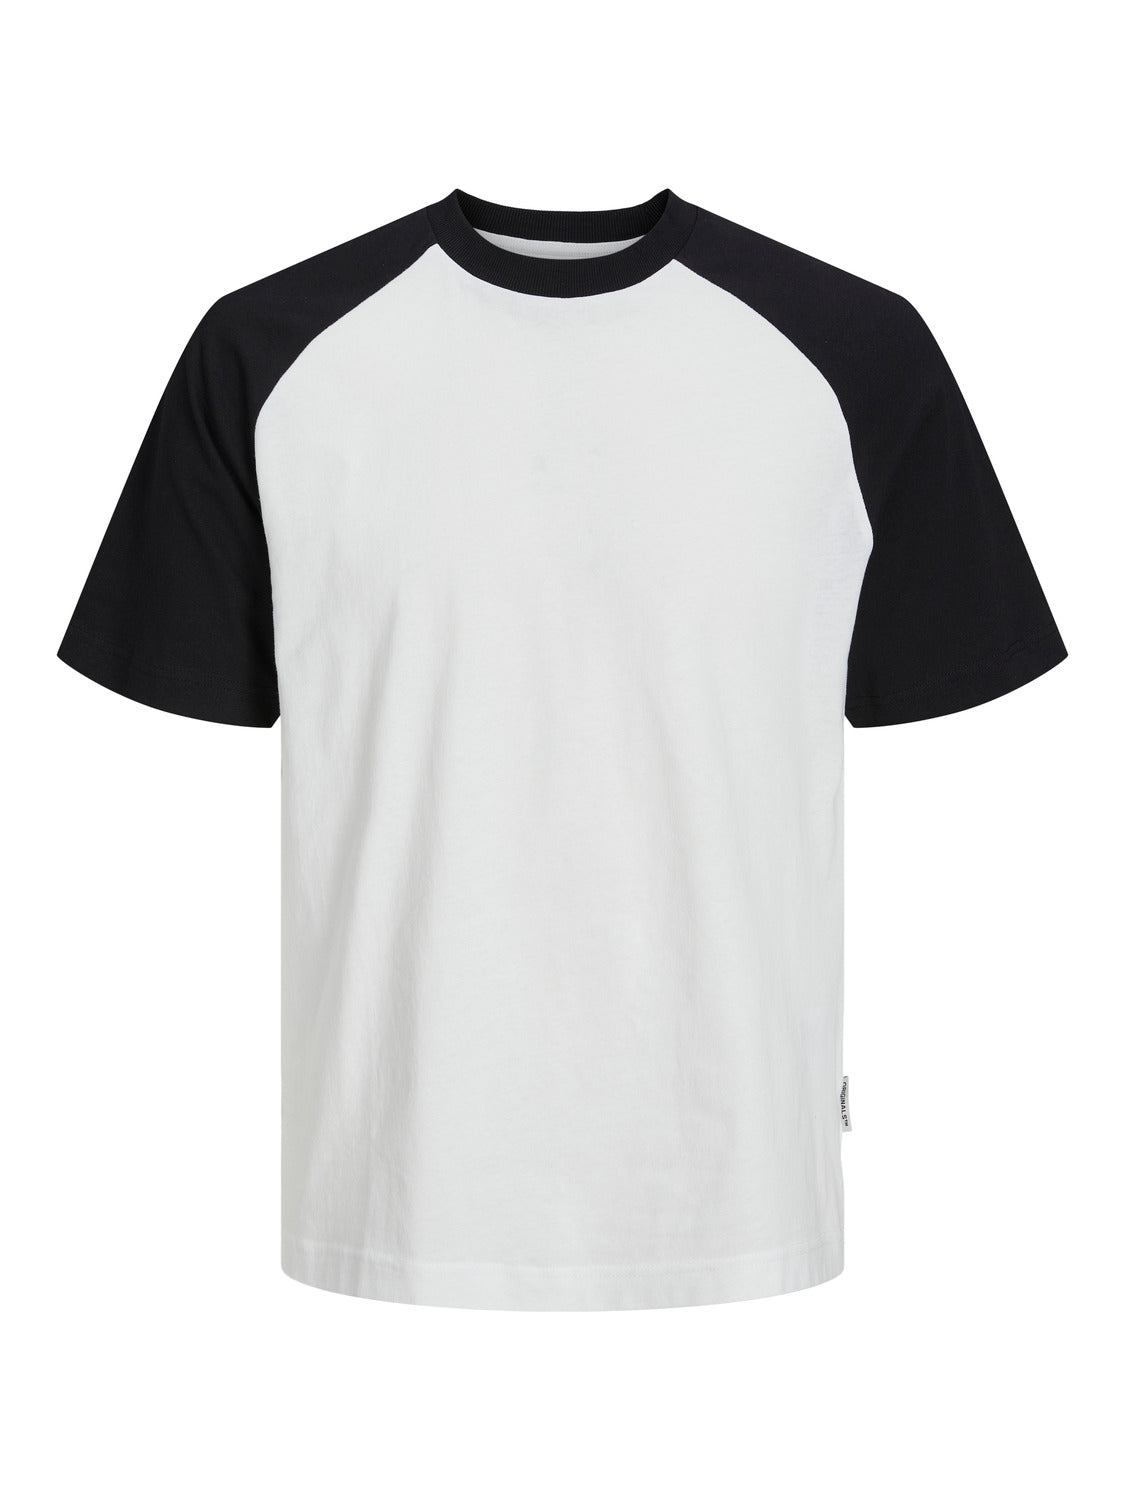 Camiseta de manga corta JORTEAM - Negro